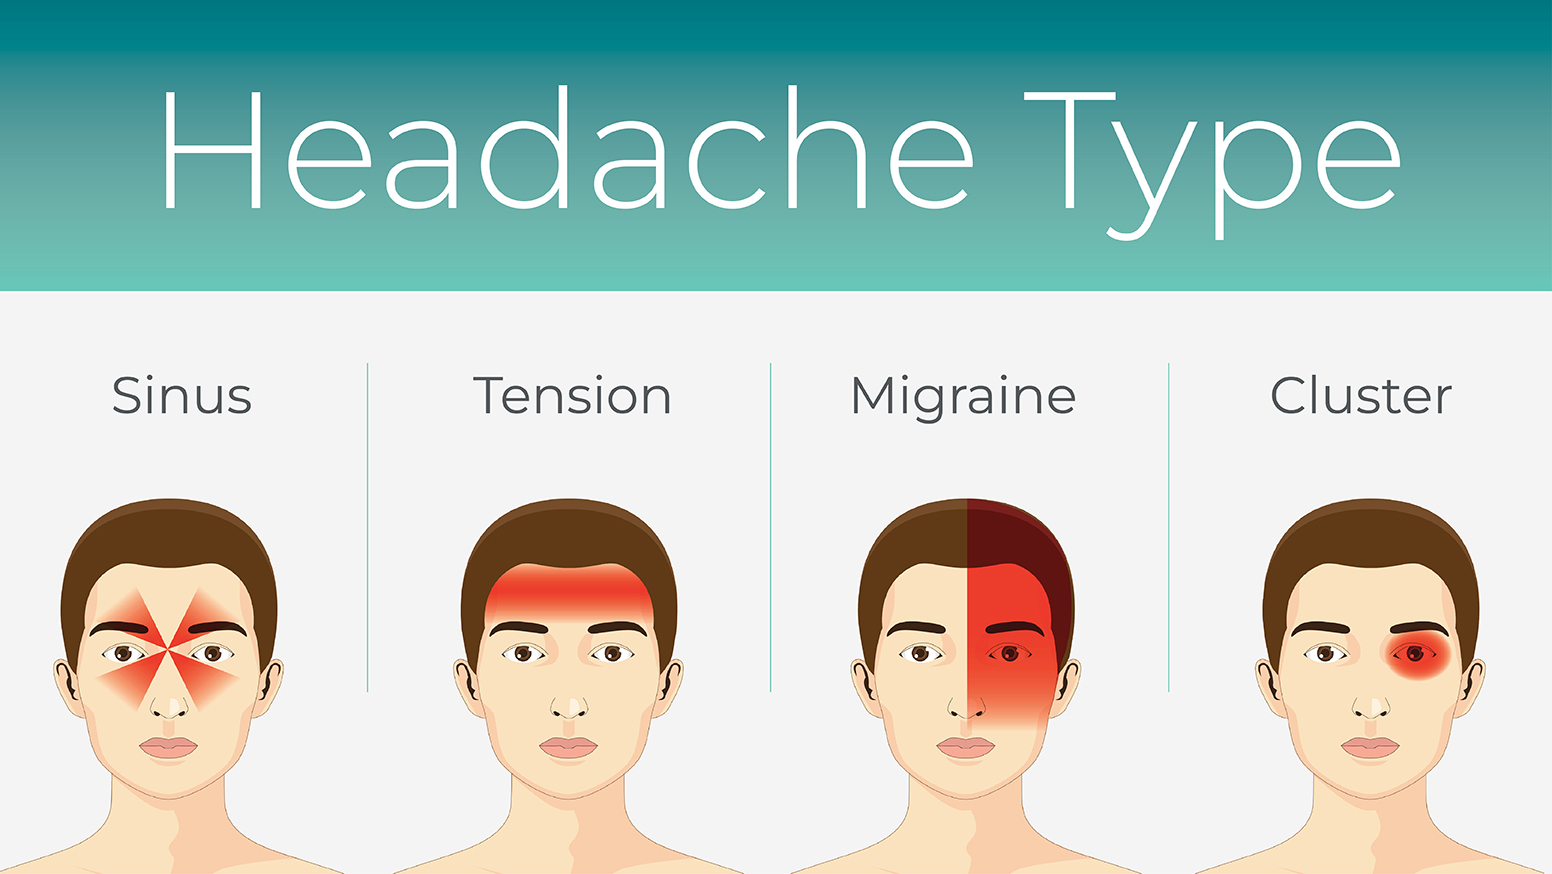 What Is a Migraine Headache? 